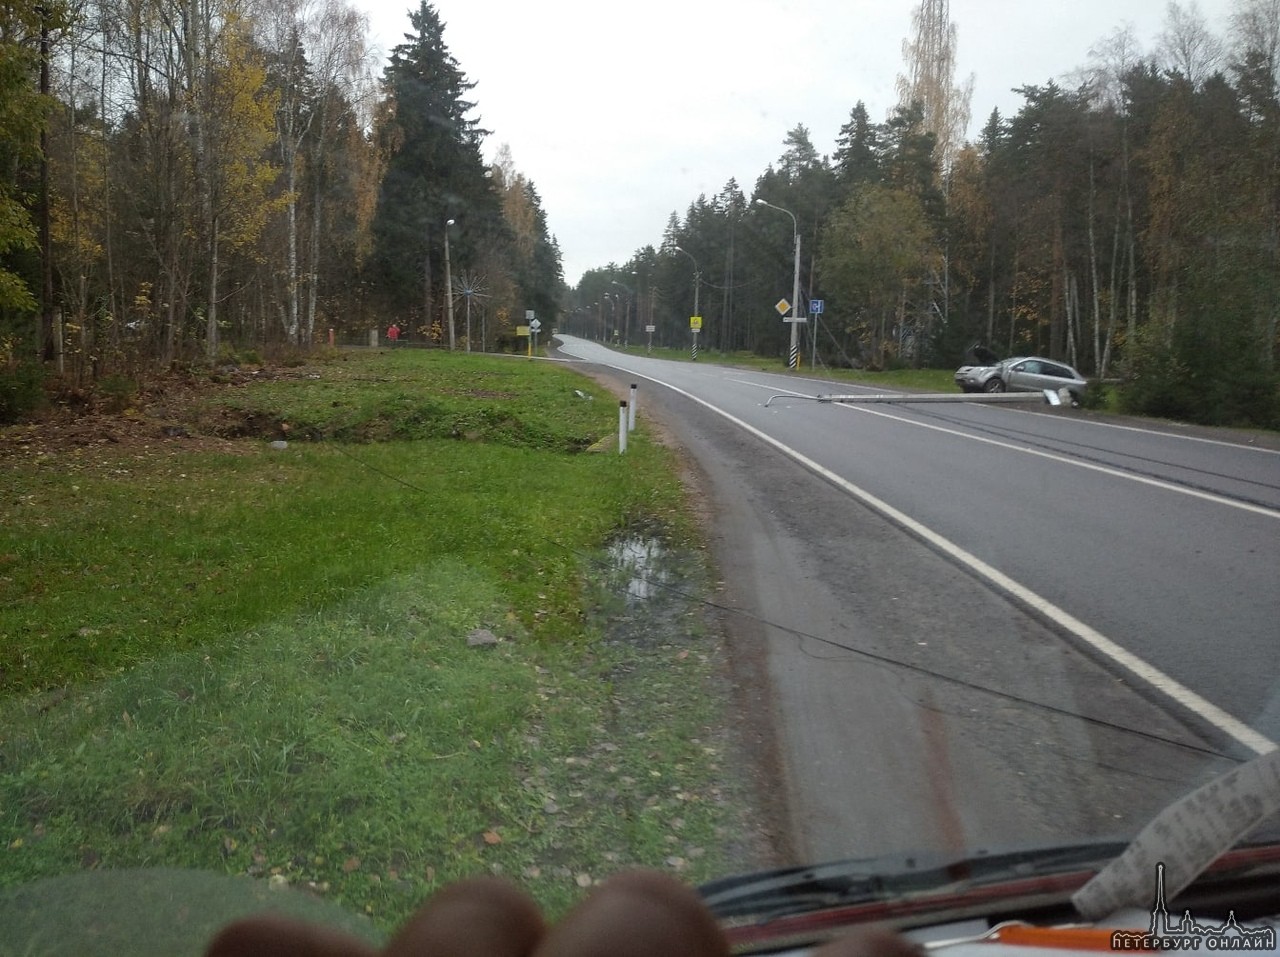 Дтп на подъезде к Смолячково. В кювете стоит внедорожник и на дороге лежат поваленные столбы. Объезд...